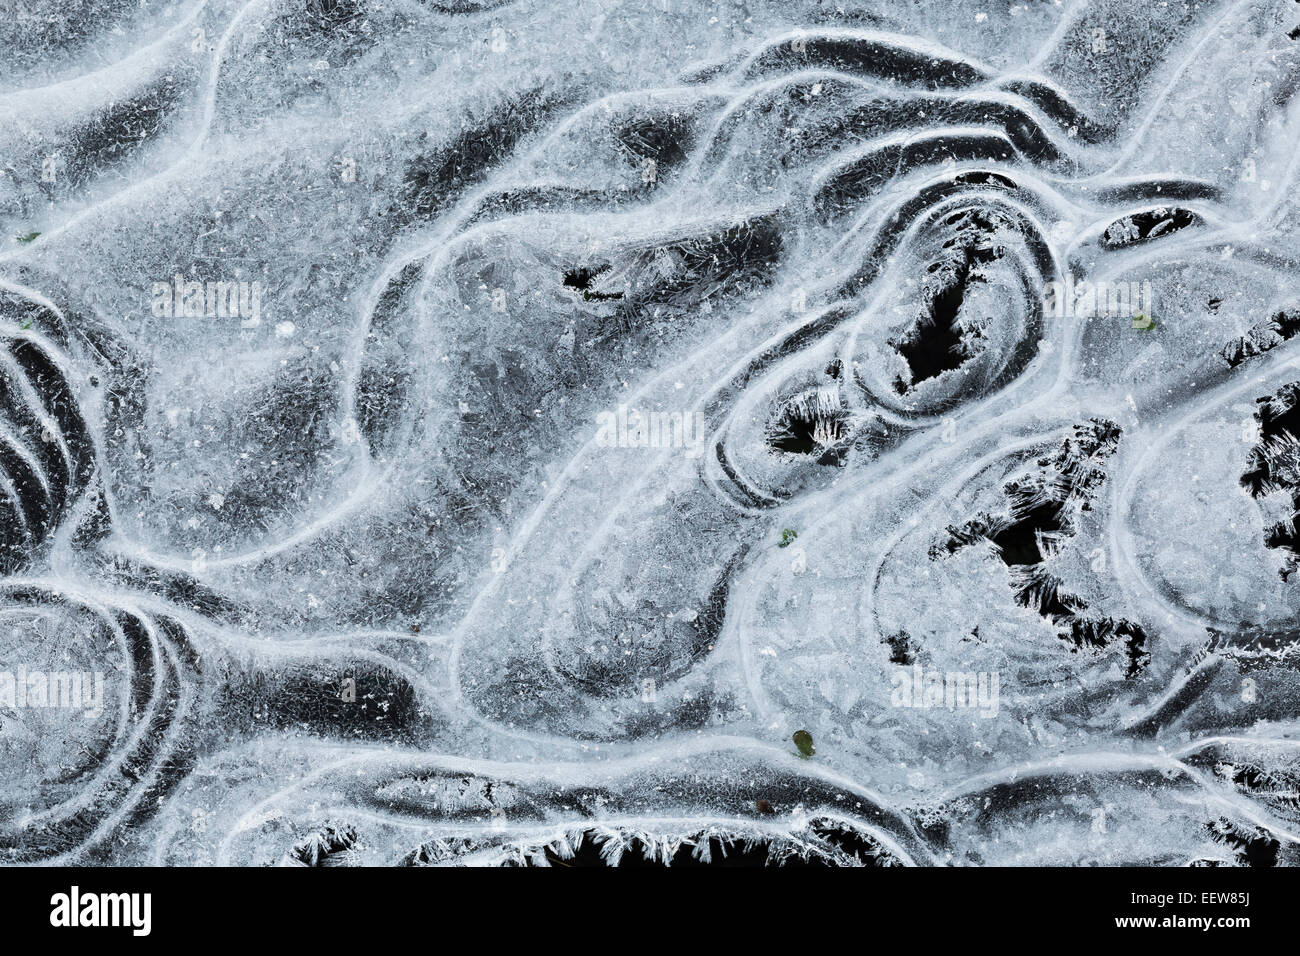 En caprichosas formas crecientes de hielo encima de un humedal en el condado de Mecosta cerca de Big Rapids y Stanwood, Michigan, EE.UU. Foto de stock